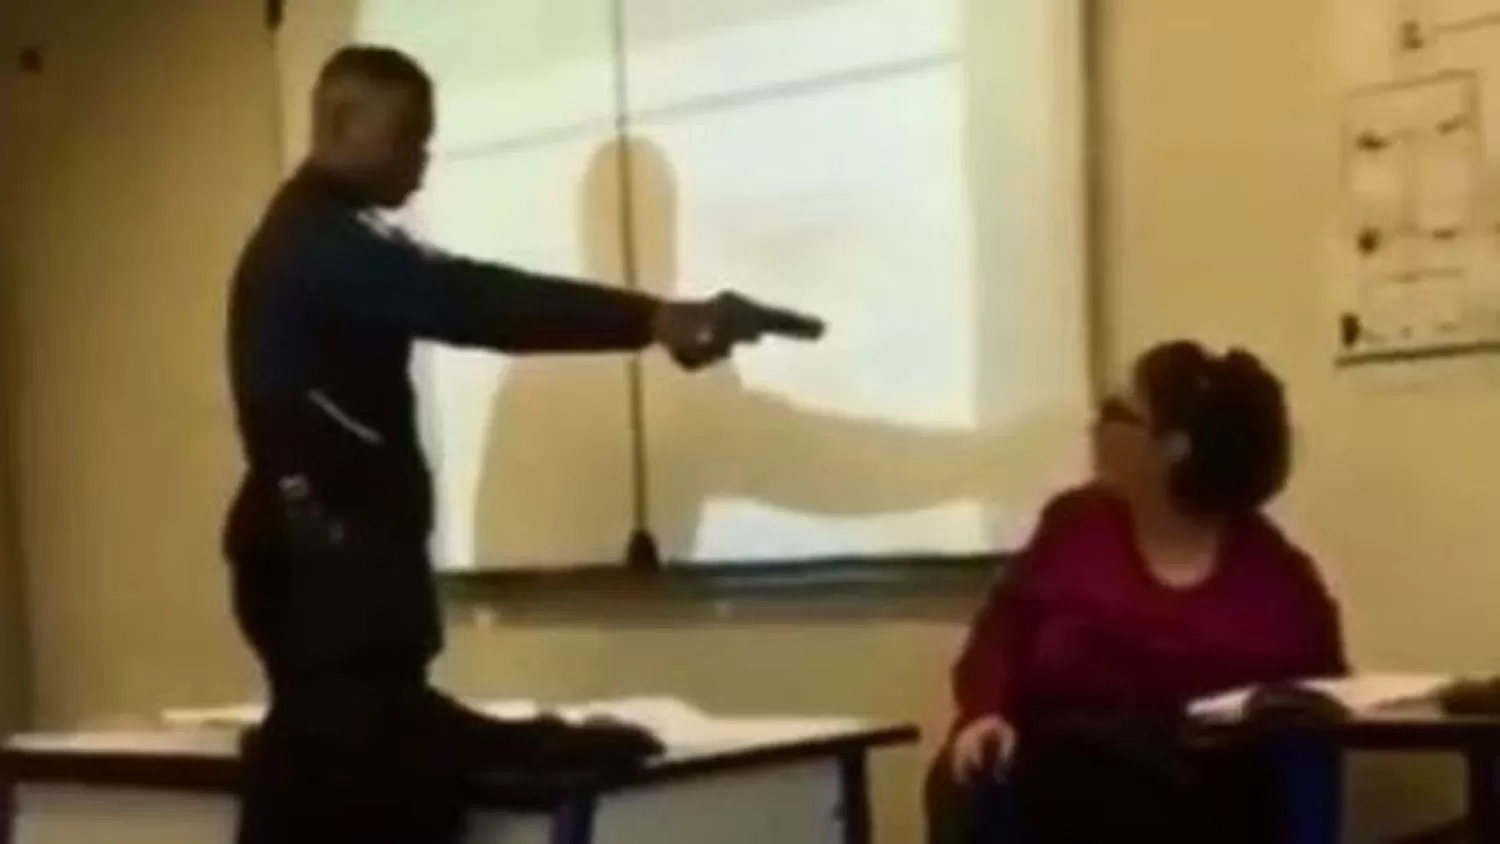 AMENAZA. A punto de pistola, un alumno amenazó a su profesora.